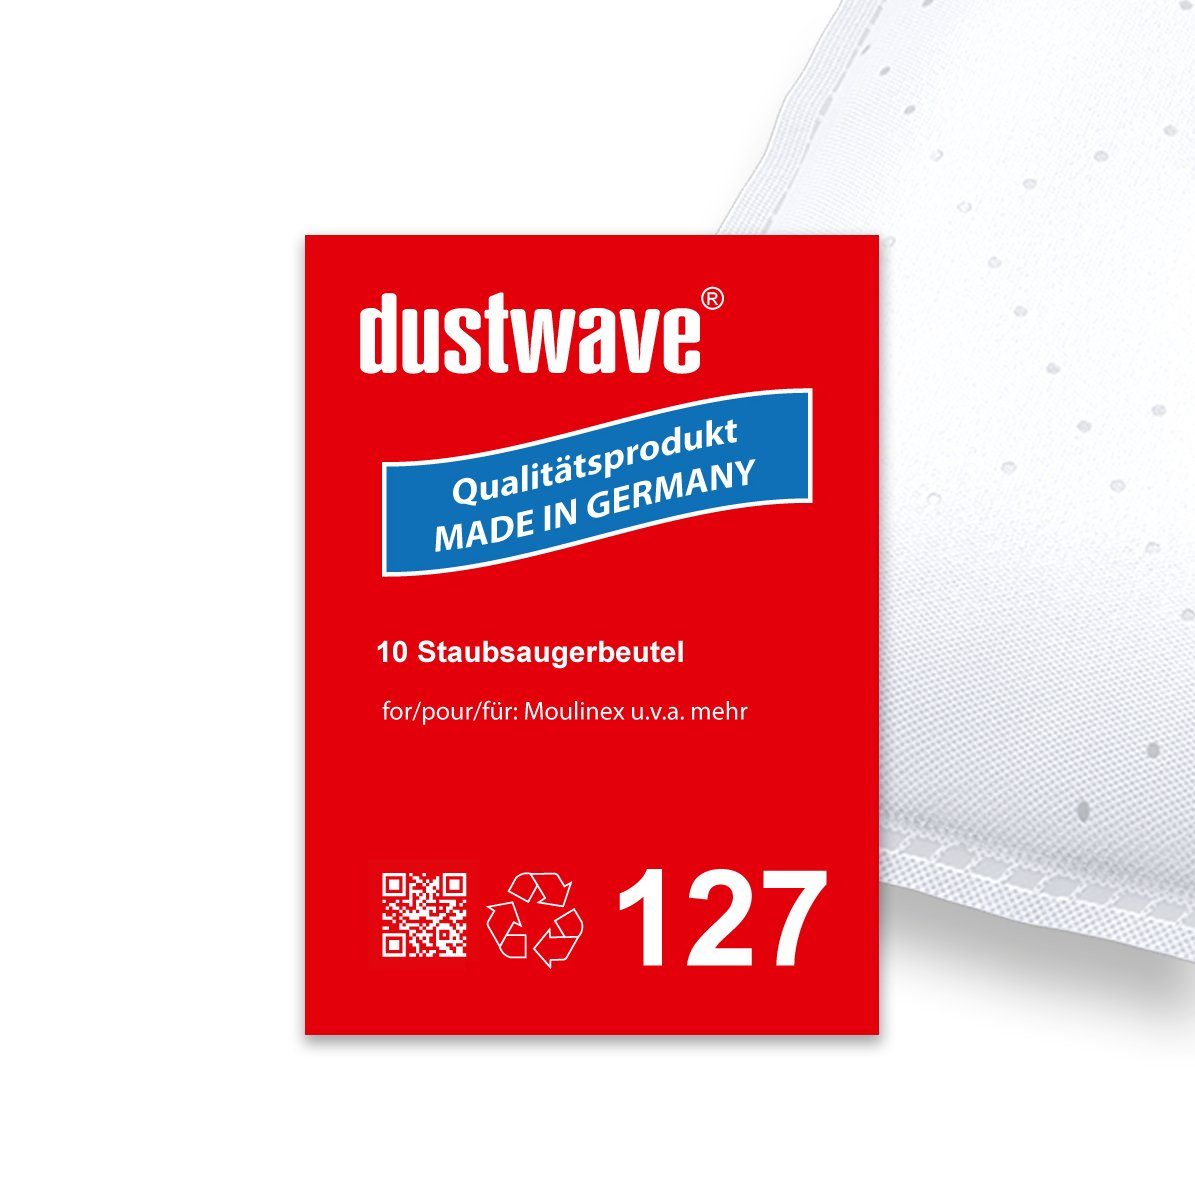 Dustwave Staubsaugerbeutel Sparpack, passend für Baur 340.043 / 340-043, 10 St., Sparpack, 10 Staubsaugerbeutel + 1 Hepa-Filter (ca. 15x15cm - zuschneidbar)